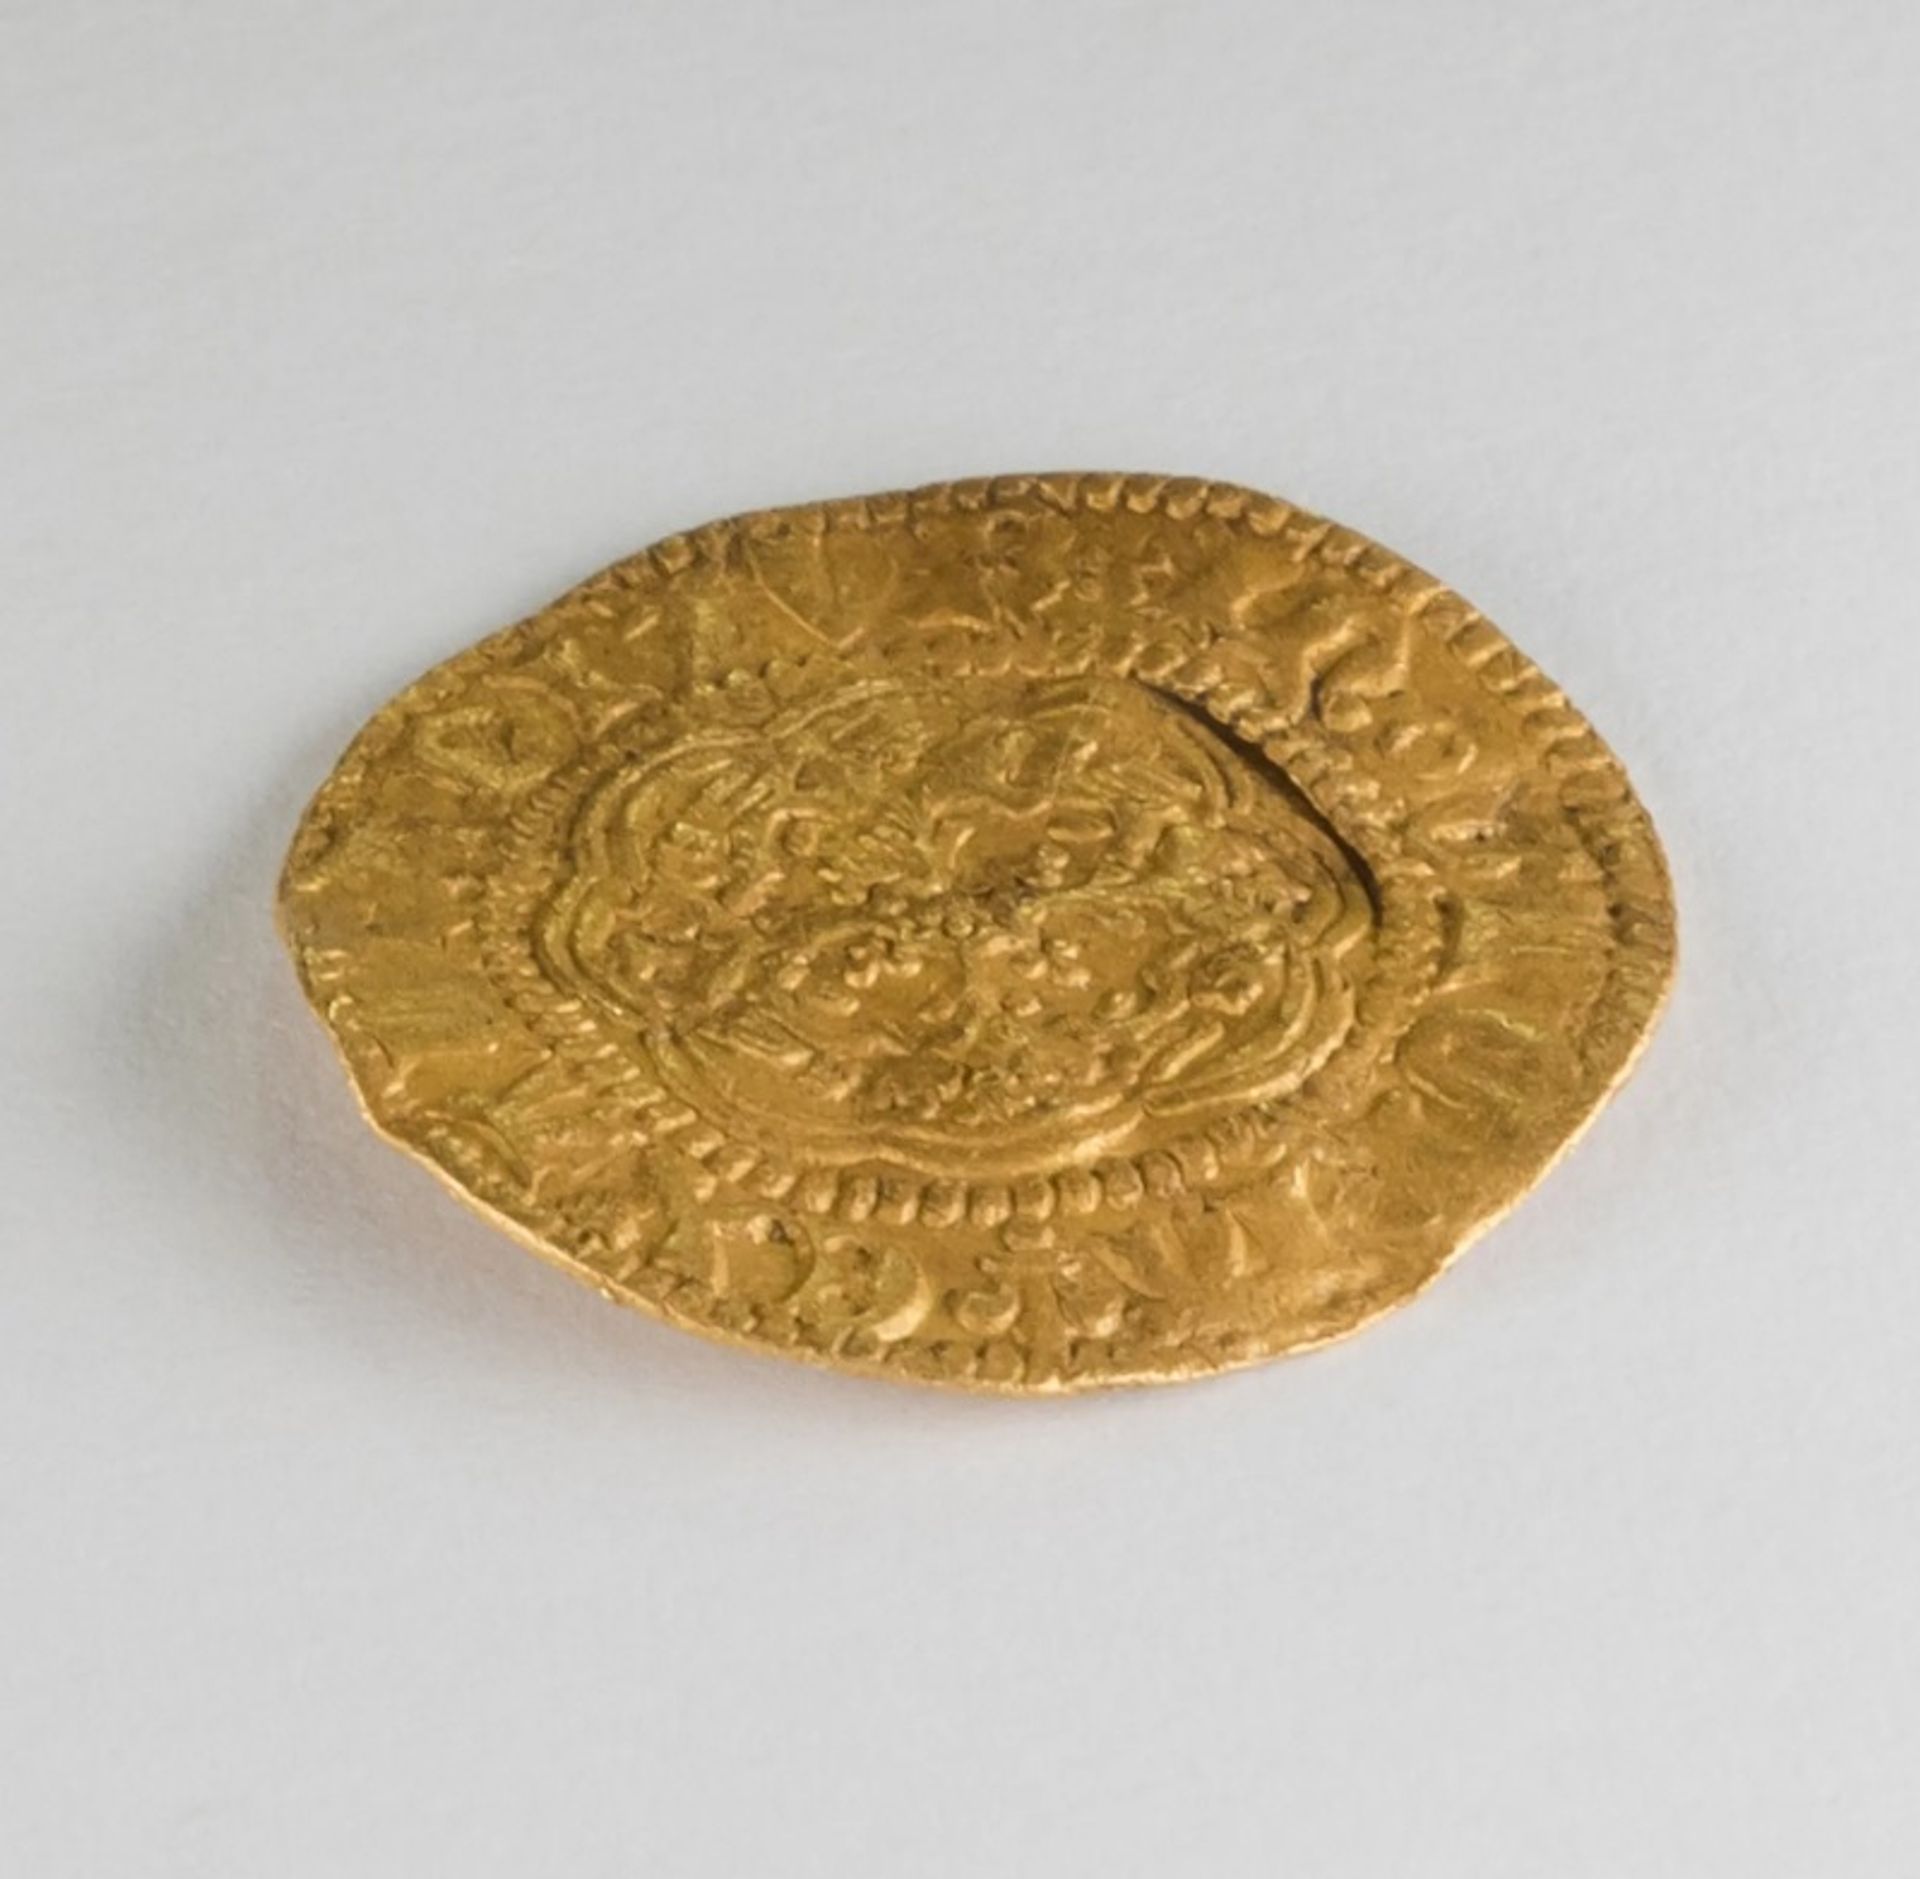 מטבע מתקופת הנרי השישי, שנטבע בלונדון בין 1422 ל-1427, התגלה לאחרונה במזרח קנדה

באדיבות ממשלת ניופאונדלנד ולברדור